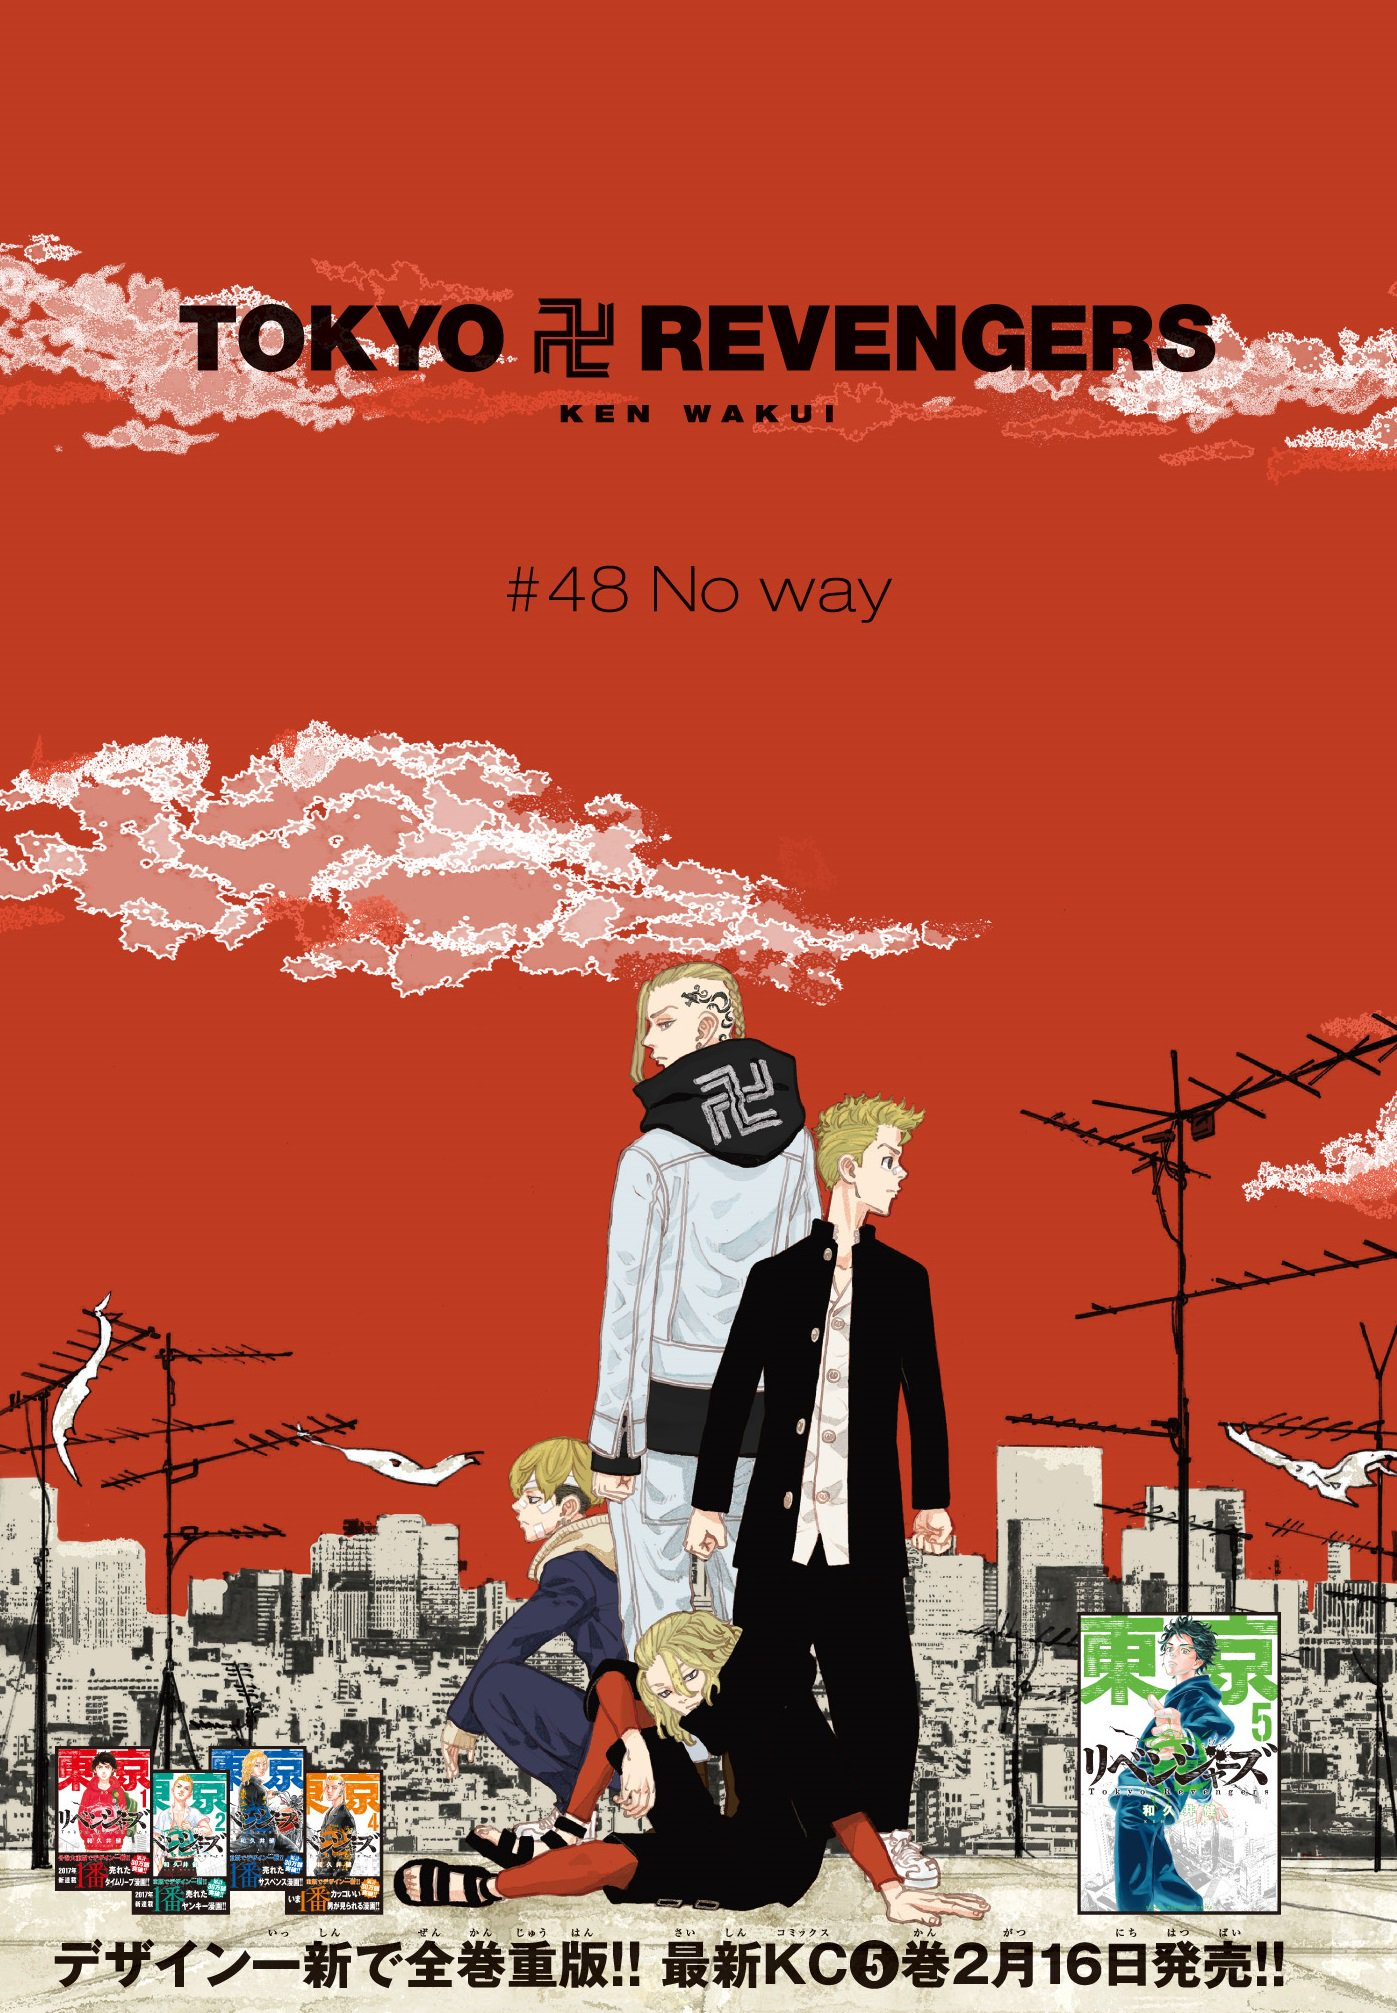 Episode 44, Tokyo Revengers Wiki